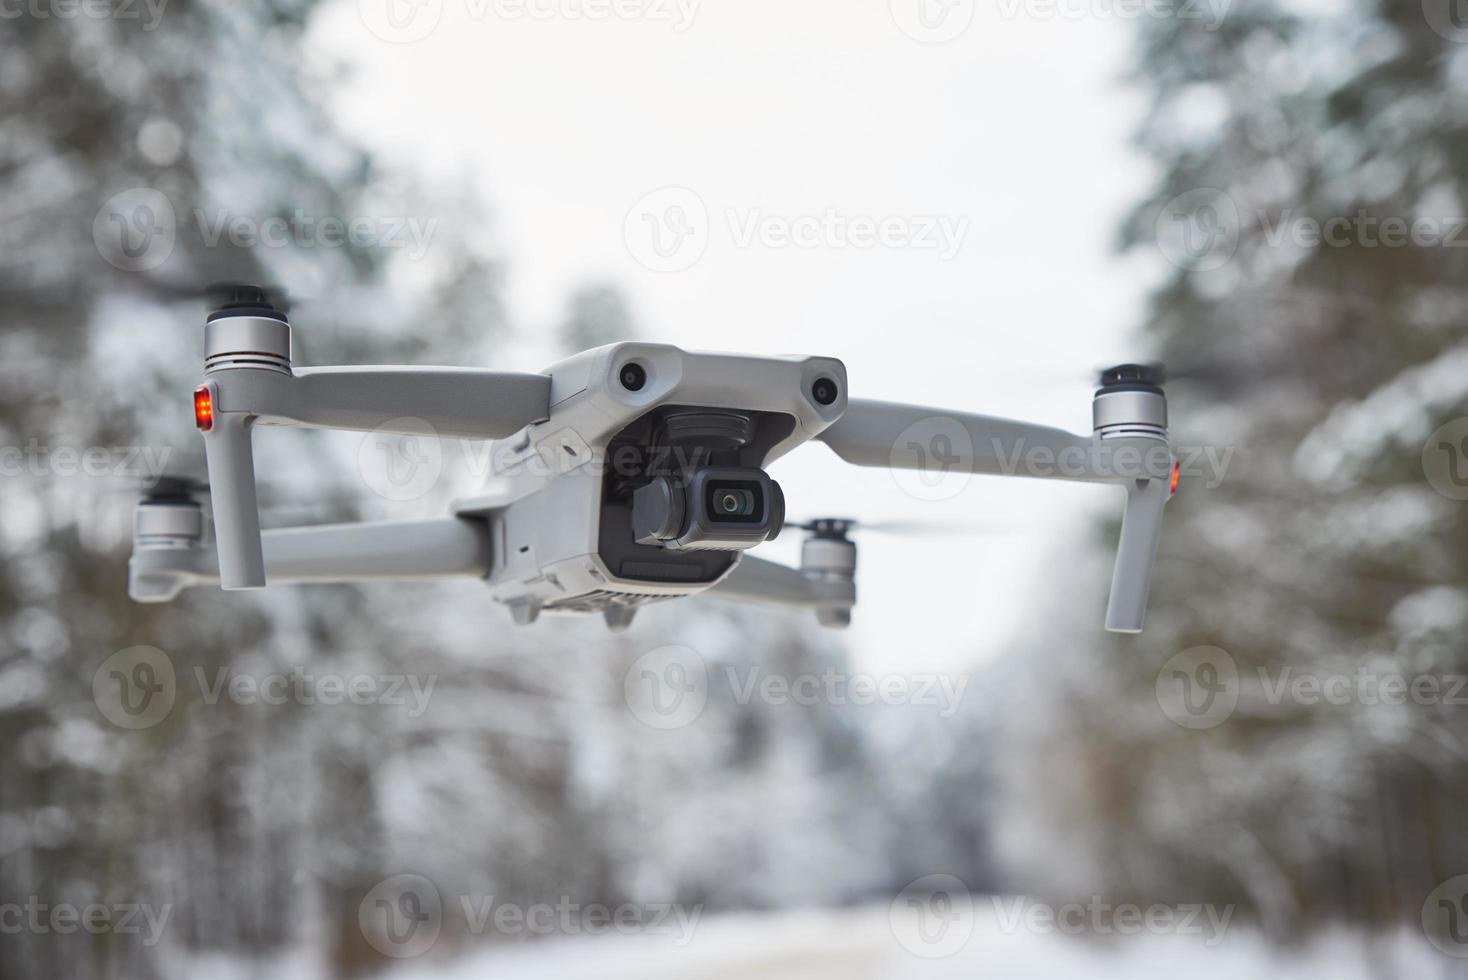 dar quadcopter met camera vliegend in winter Woud foto